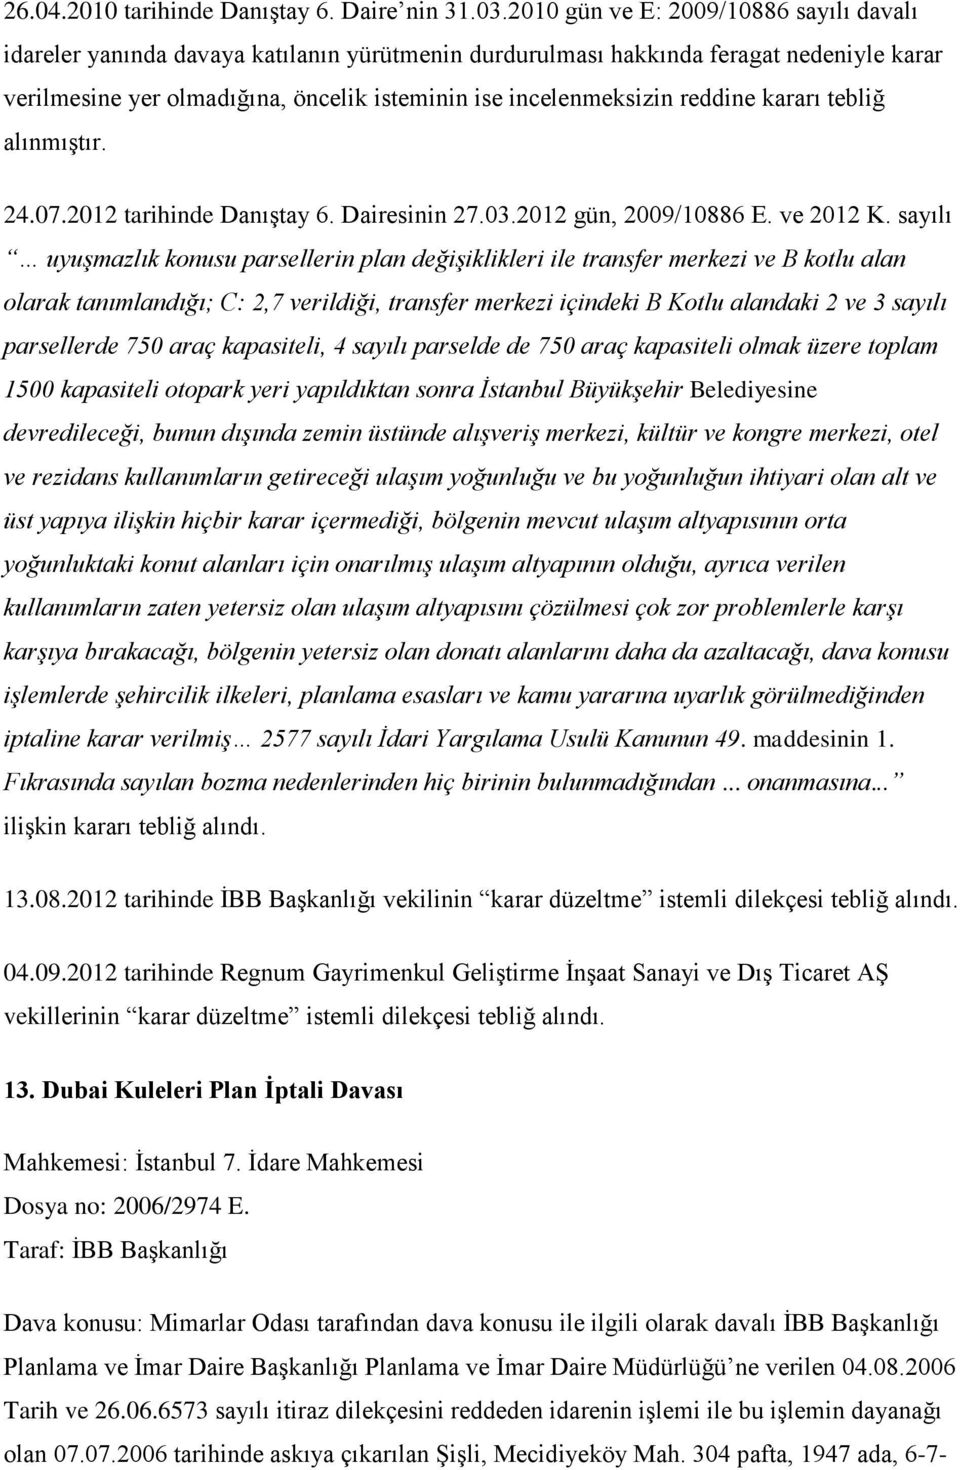 reddine kararı tebliğ alınmıştır. 24.07.2012 tarihinde Danıştay 6. Dairesinin 27.03.2012 gün, 2009/10886 E. ve 2012 K.